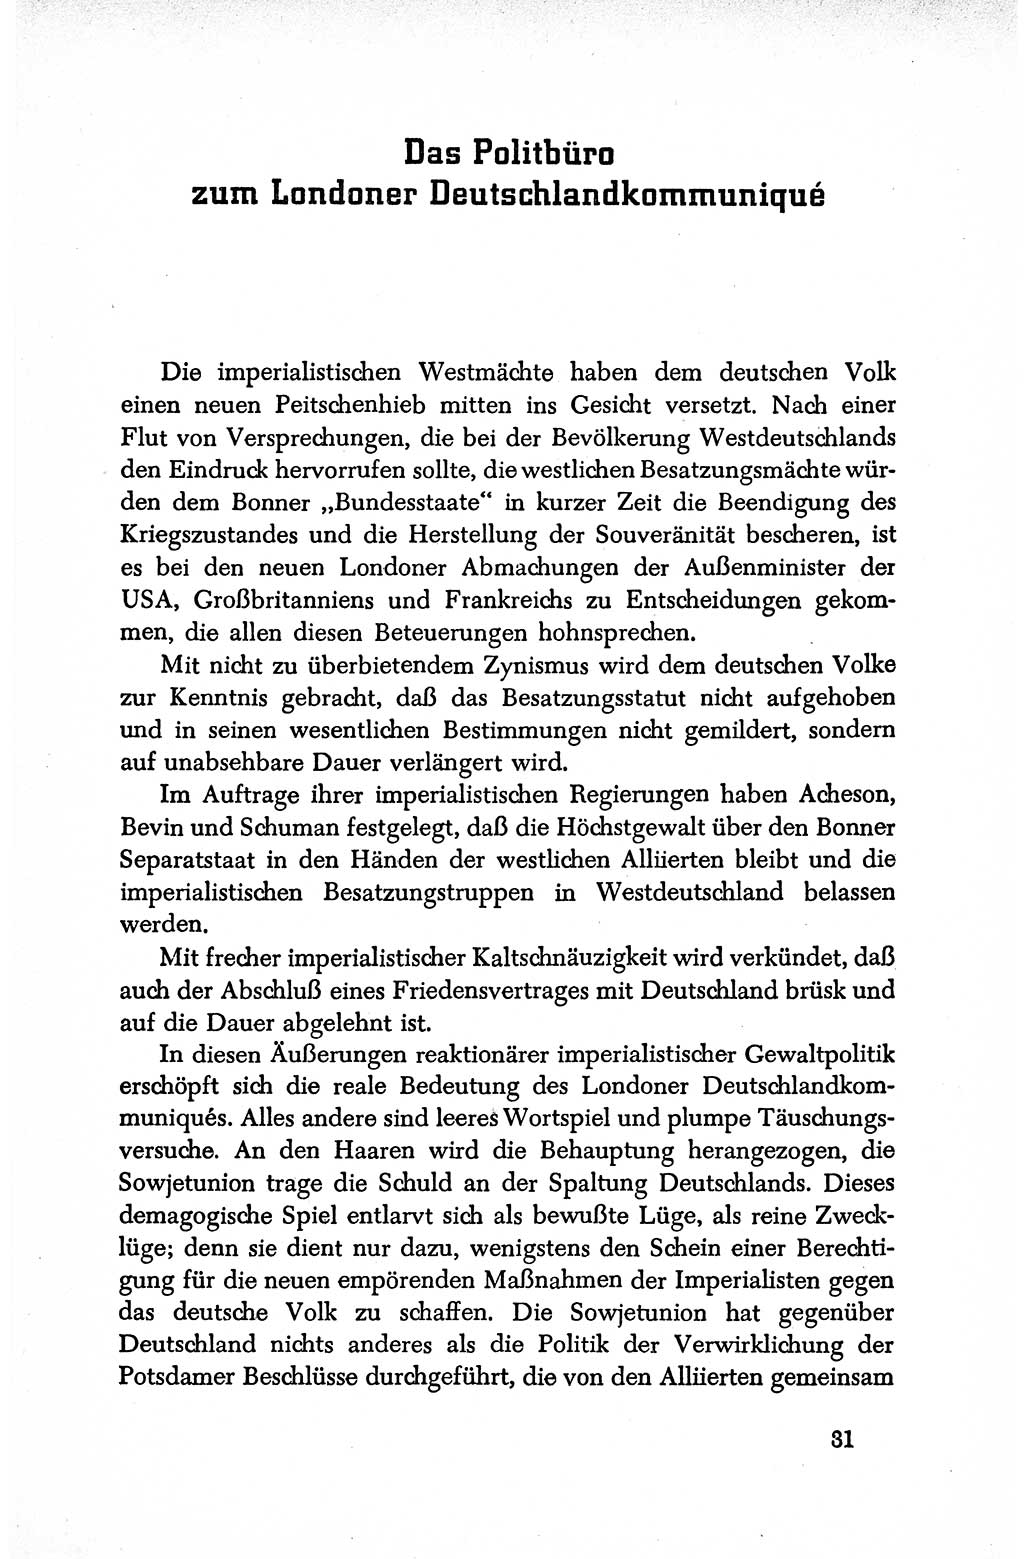 Dokumente der Sozialistischen Einheitspartei Deutschlands (SED) [Deutsche Demokratische Republik (DDR)] 1950-1952, Seite 31 (Dok. SED DDR 1950-1952, S. 31)